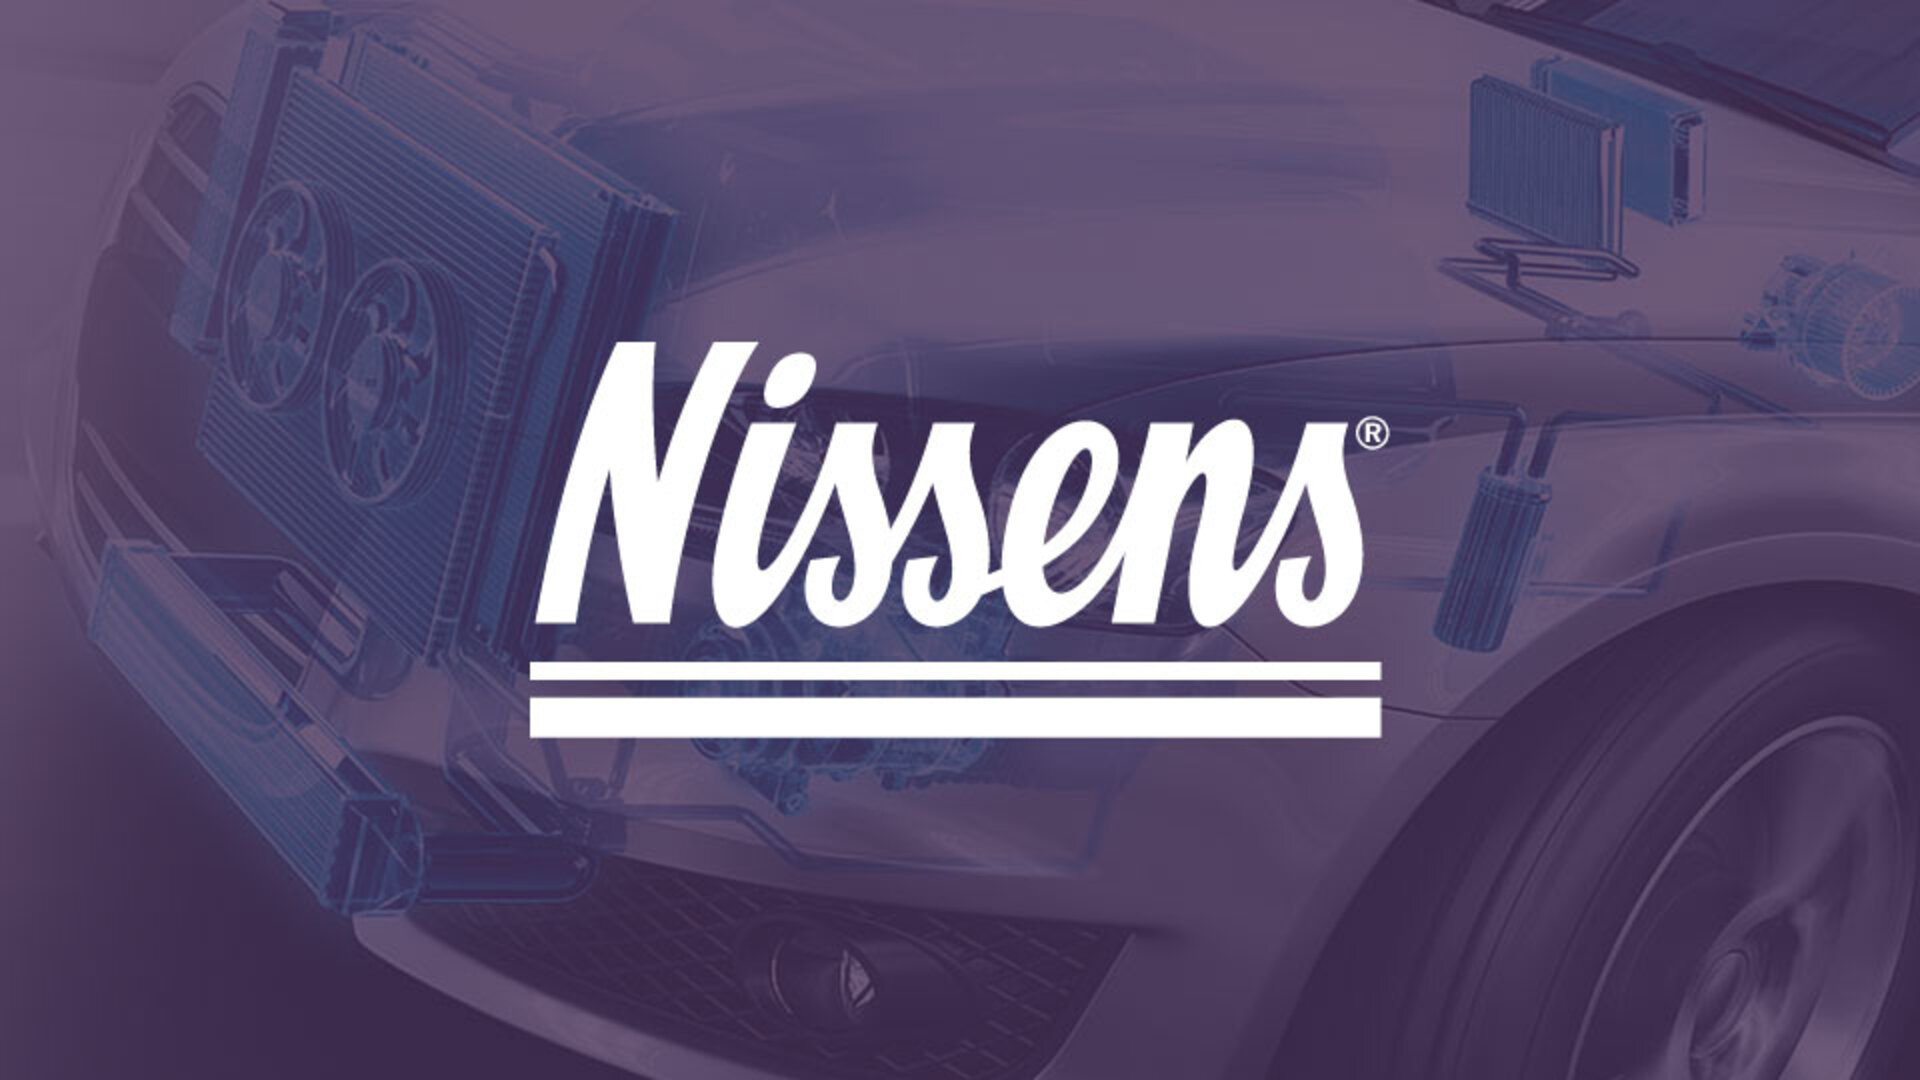 Nissens - ny kundeportal med henblik på deling af data